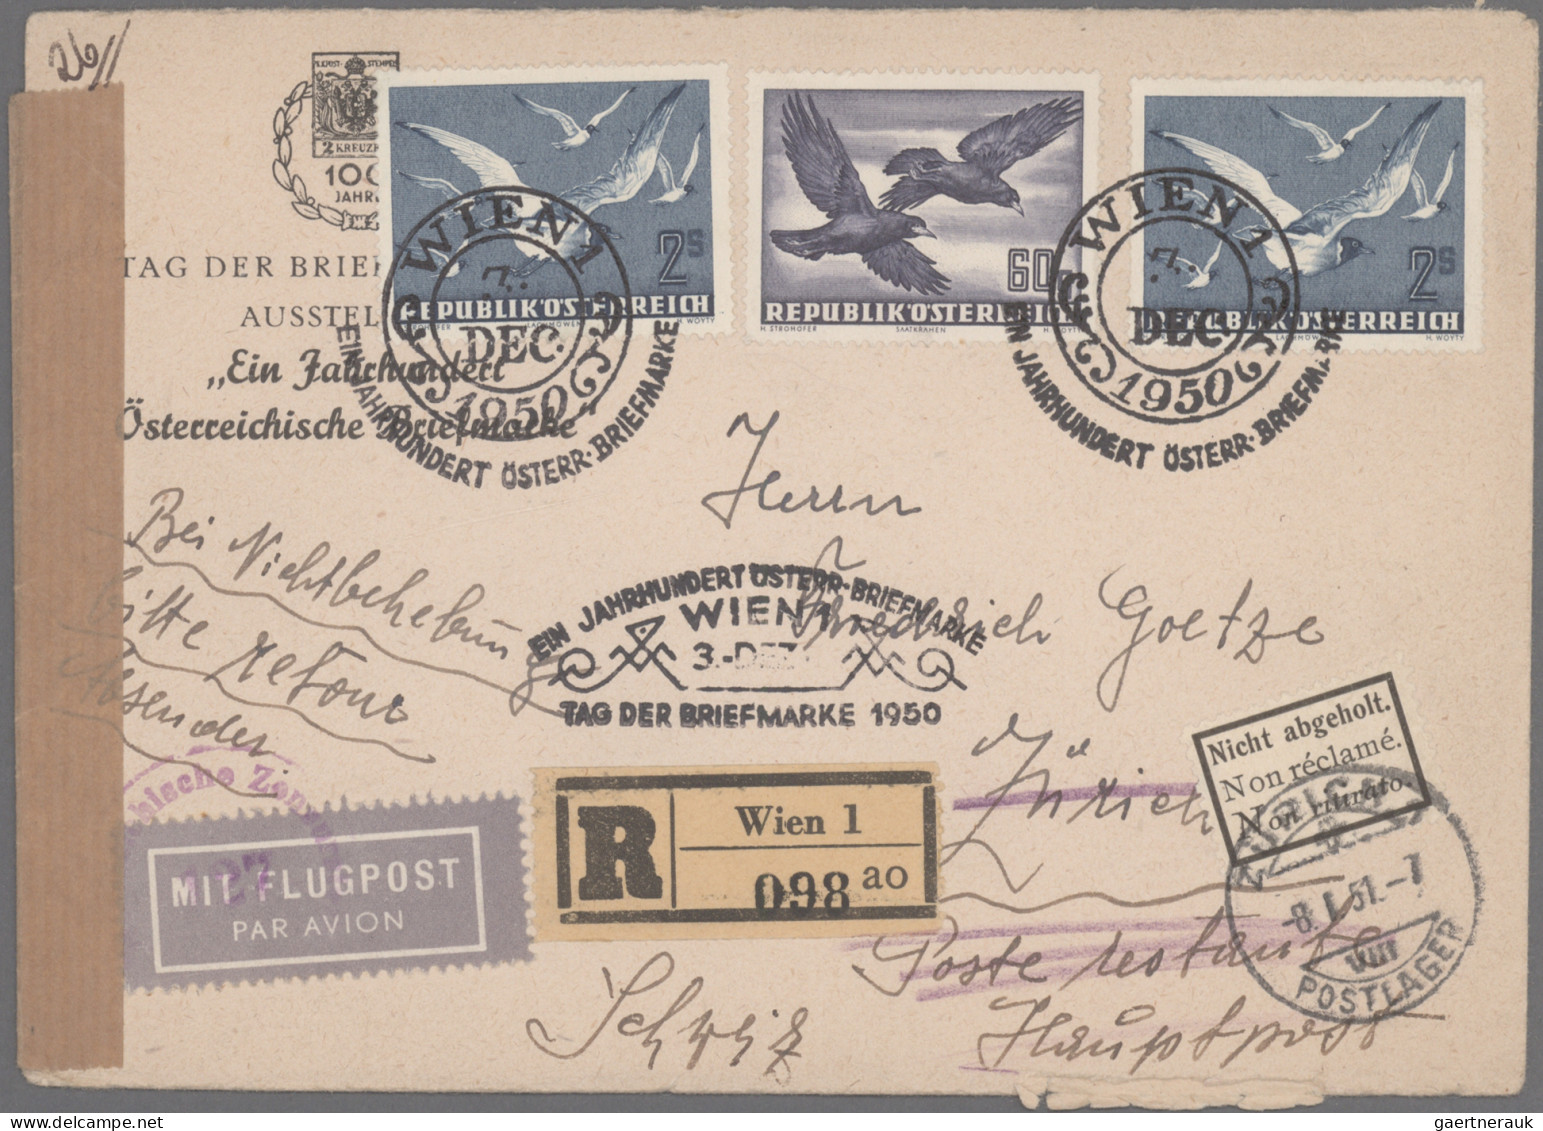 Österreich - Flugpost: 1918/1981, saubere Sammlung von 34 Flugpostbelegen sowie